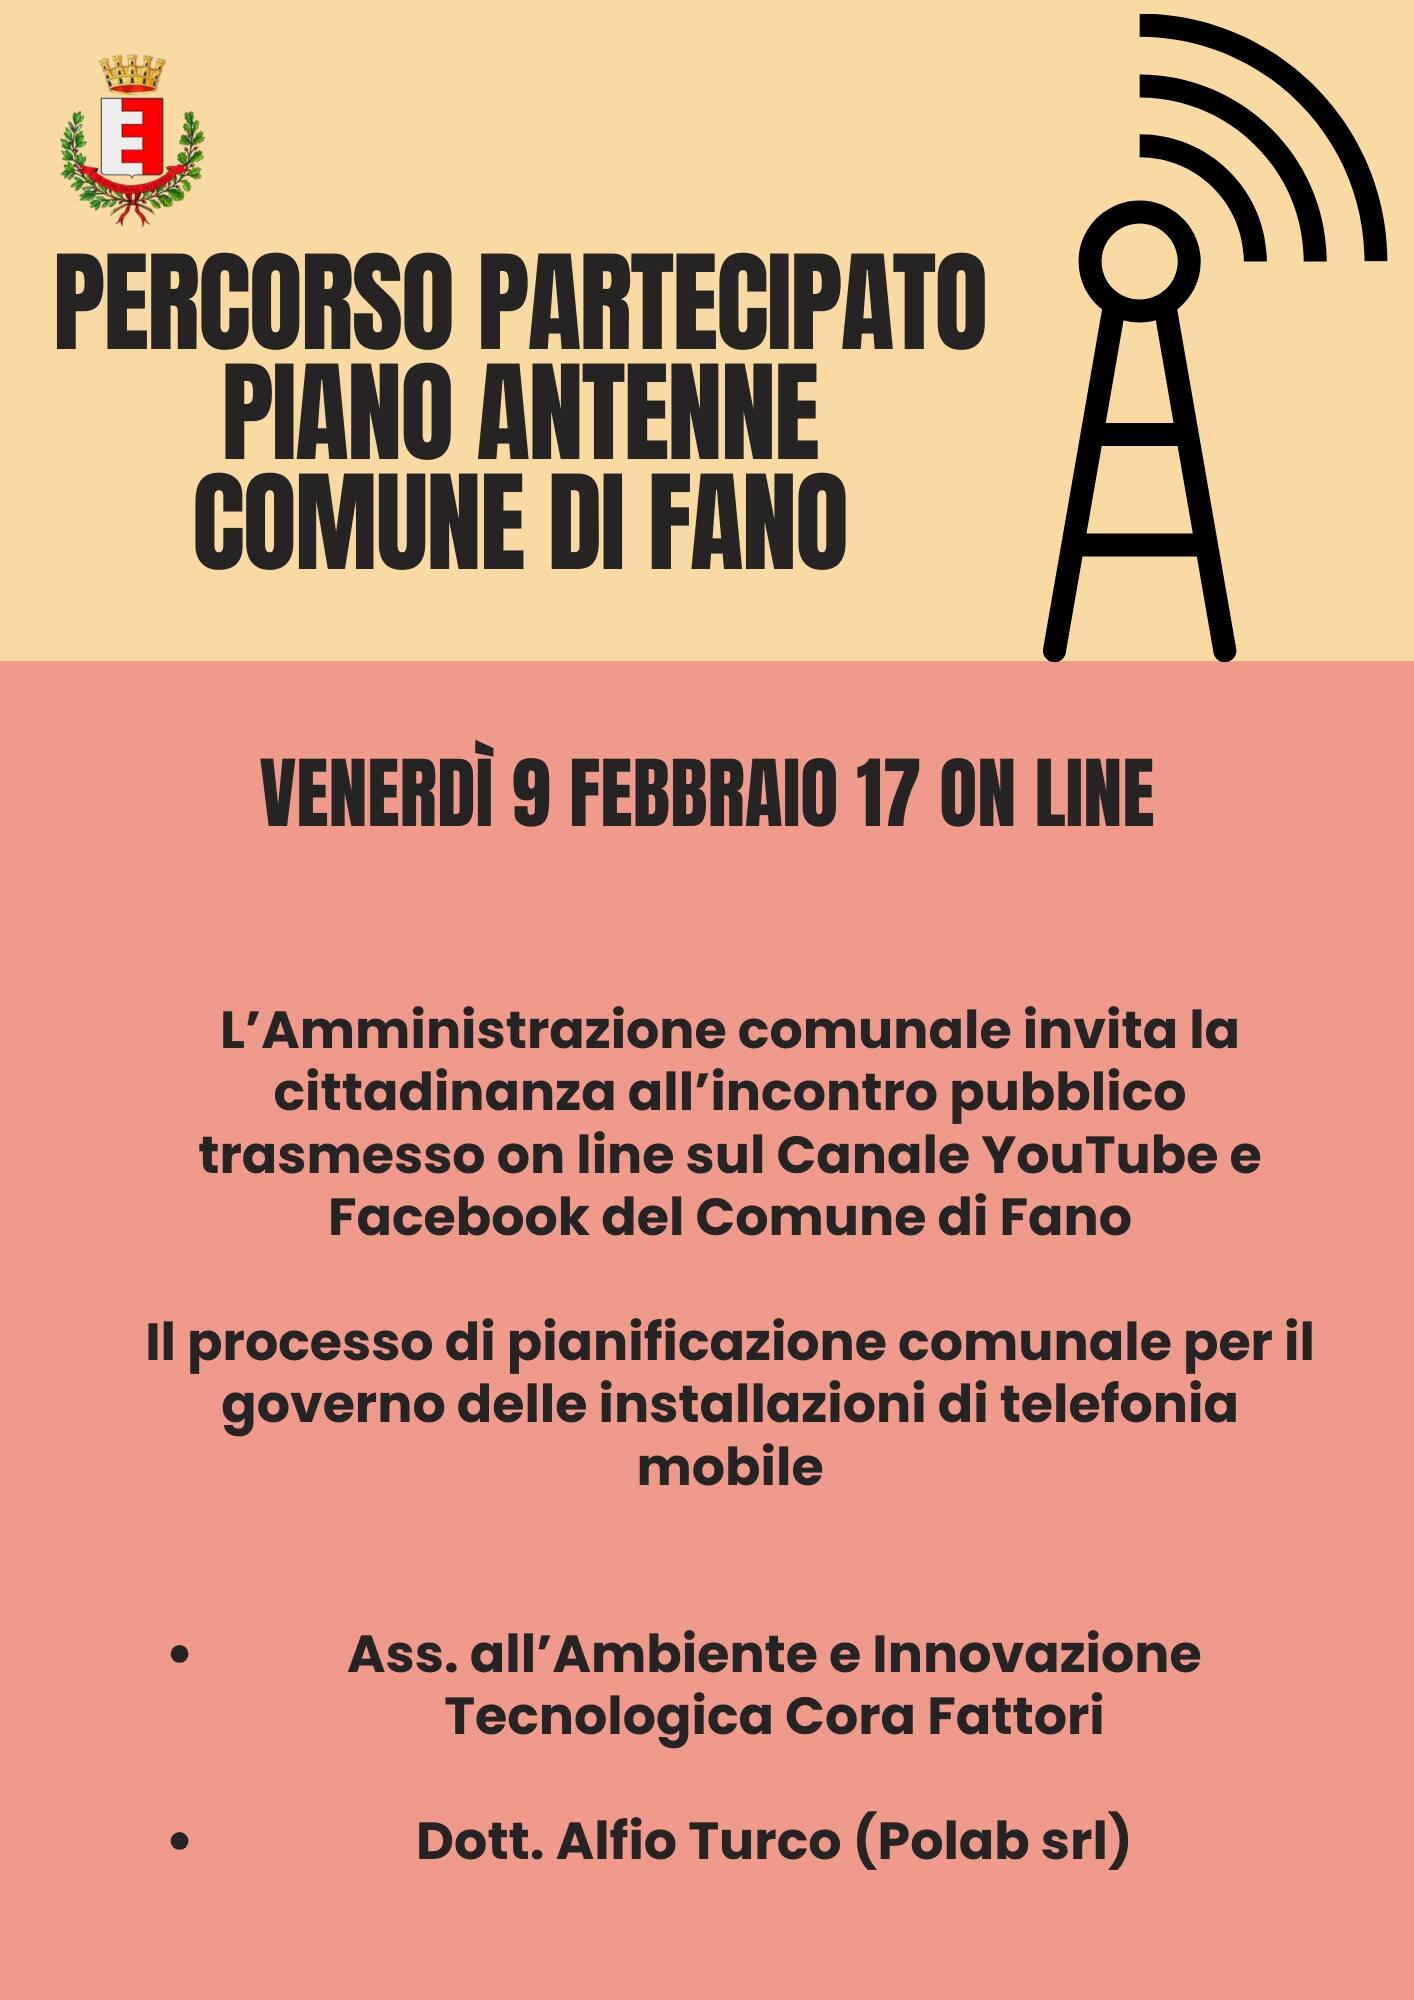 Percorso partecipato Piano antenne, il 9 febbraio l’incontro pubblico online per presentare il nuovo dispositivo normativo 